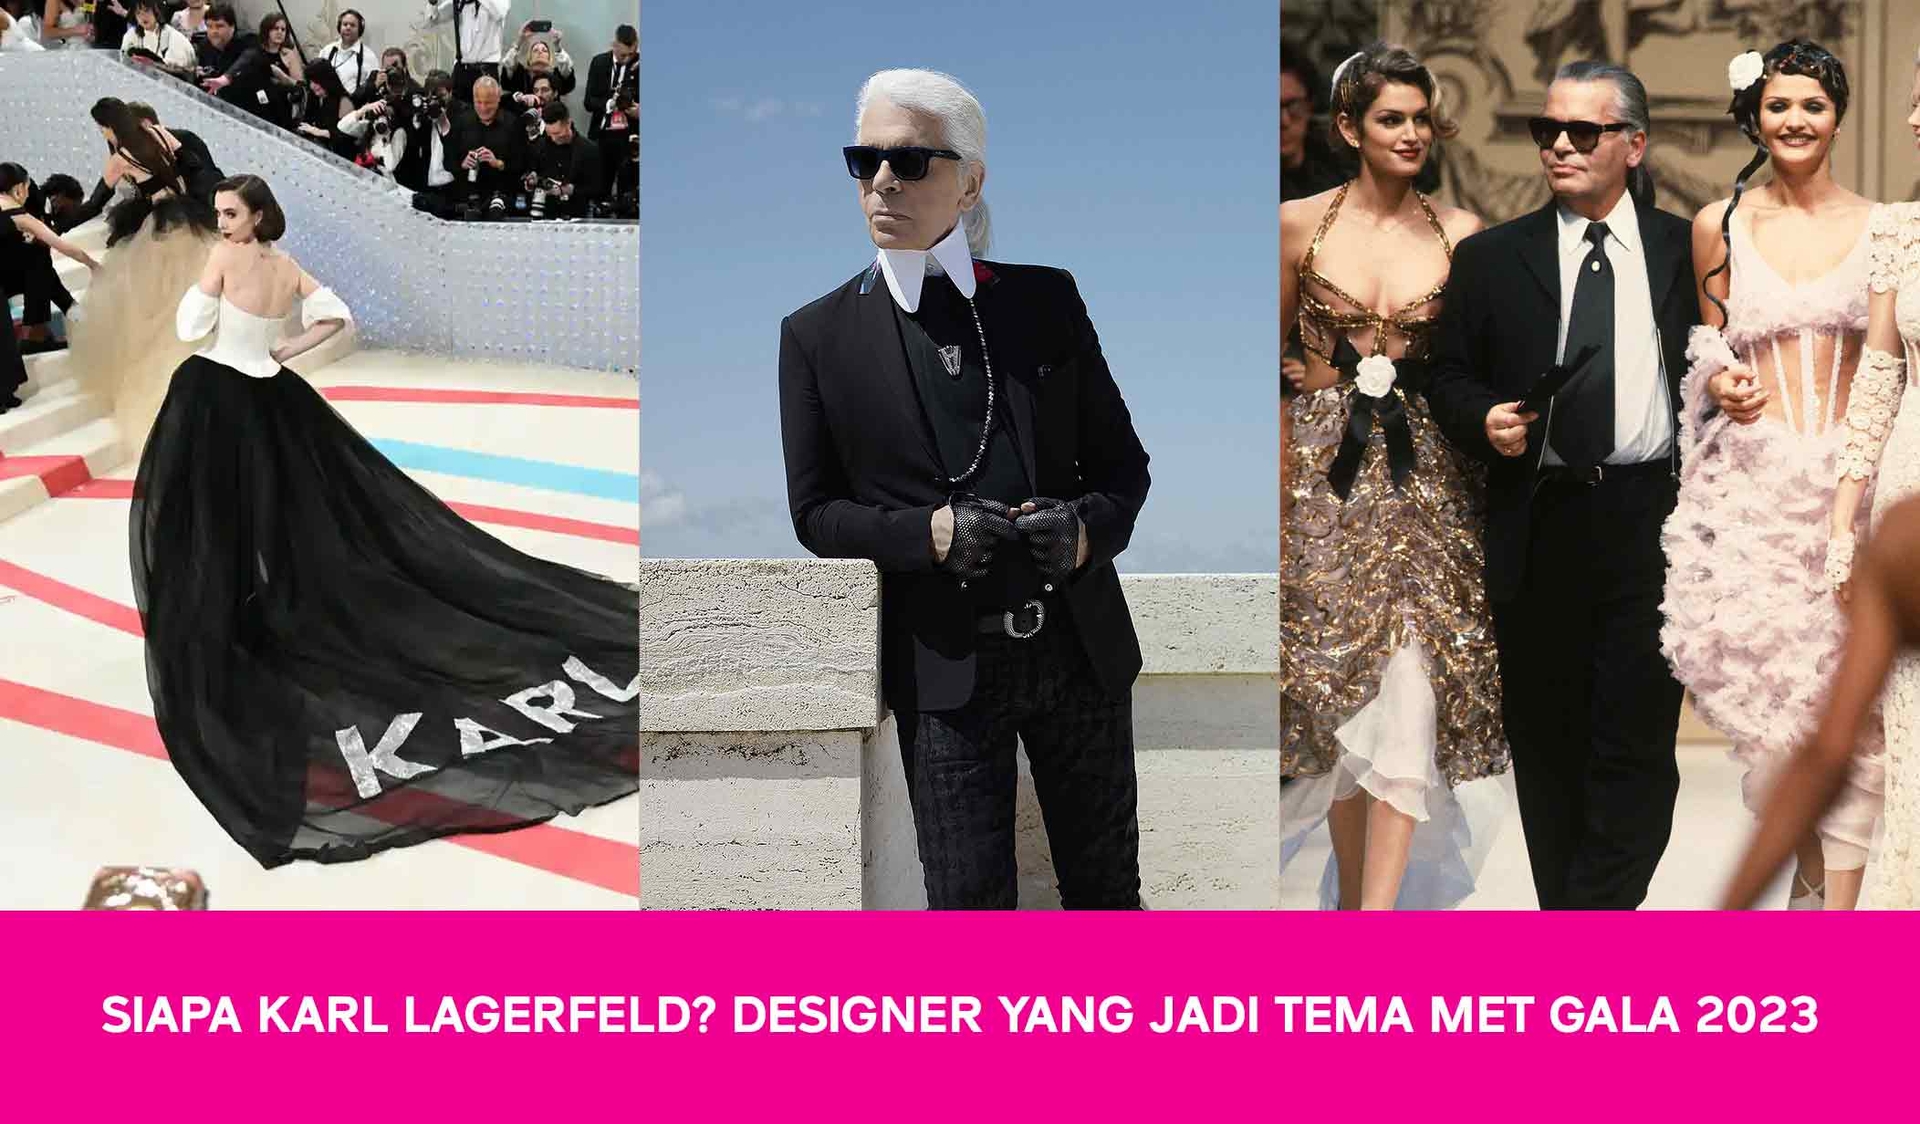 Siapa Karl Lagerfeld? Designer Yang Jadi Tema Met Gala 2023